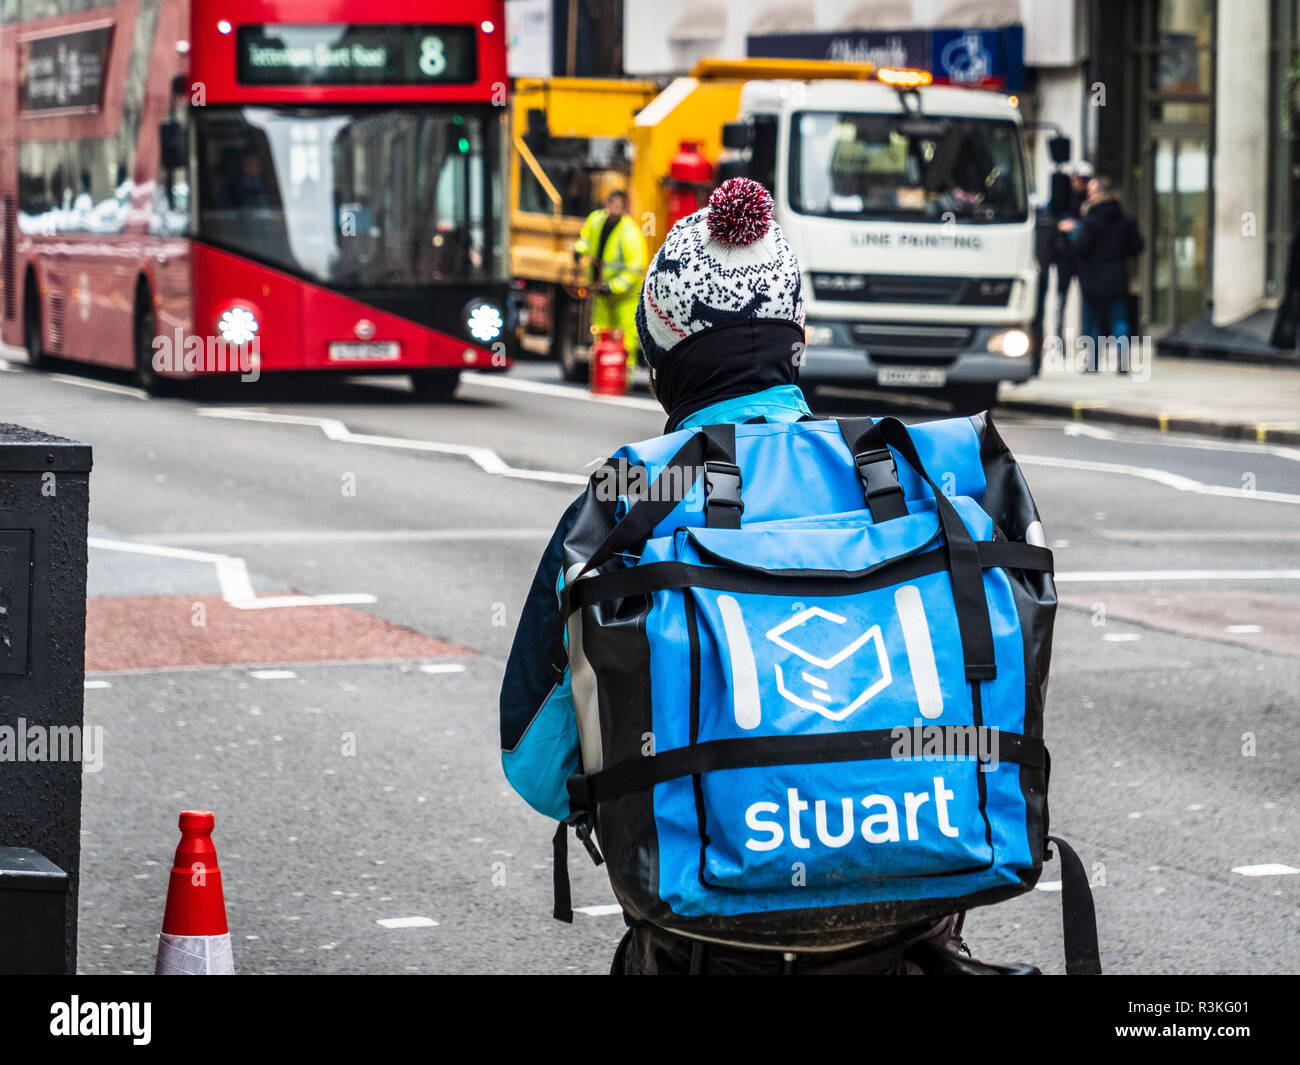 Stuart Gesellschaft Essen Lieferung Kurier fährt durch die Straßen Londons, Stuart steht im Wettbewerb mit Deliveroo und Uber isst in diesem hart umkämpften Markt Stockfoto